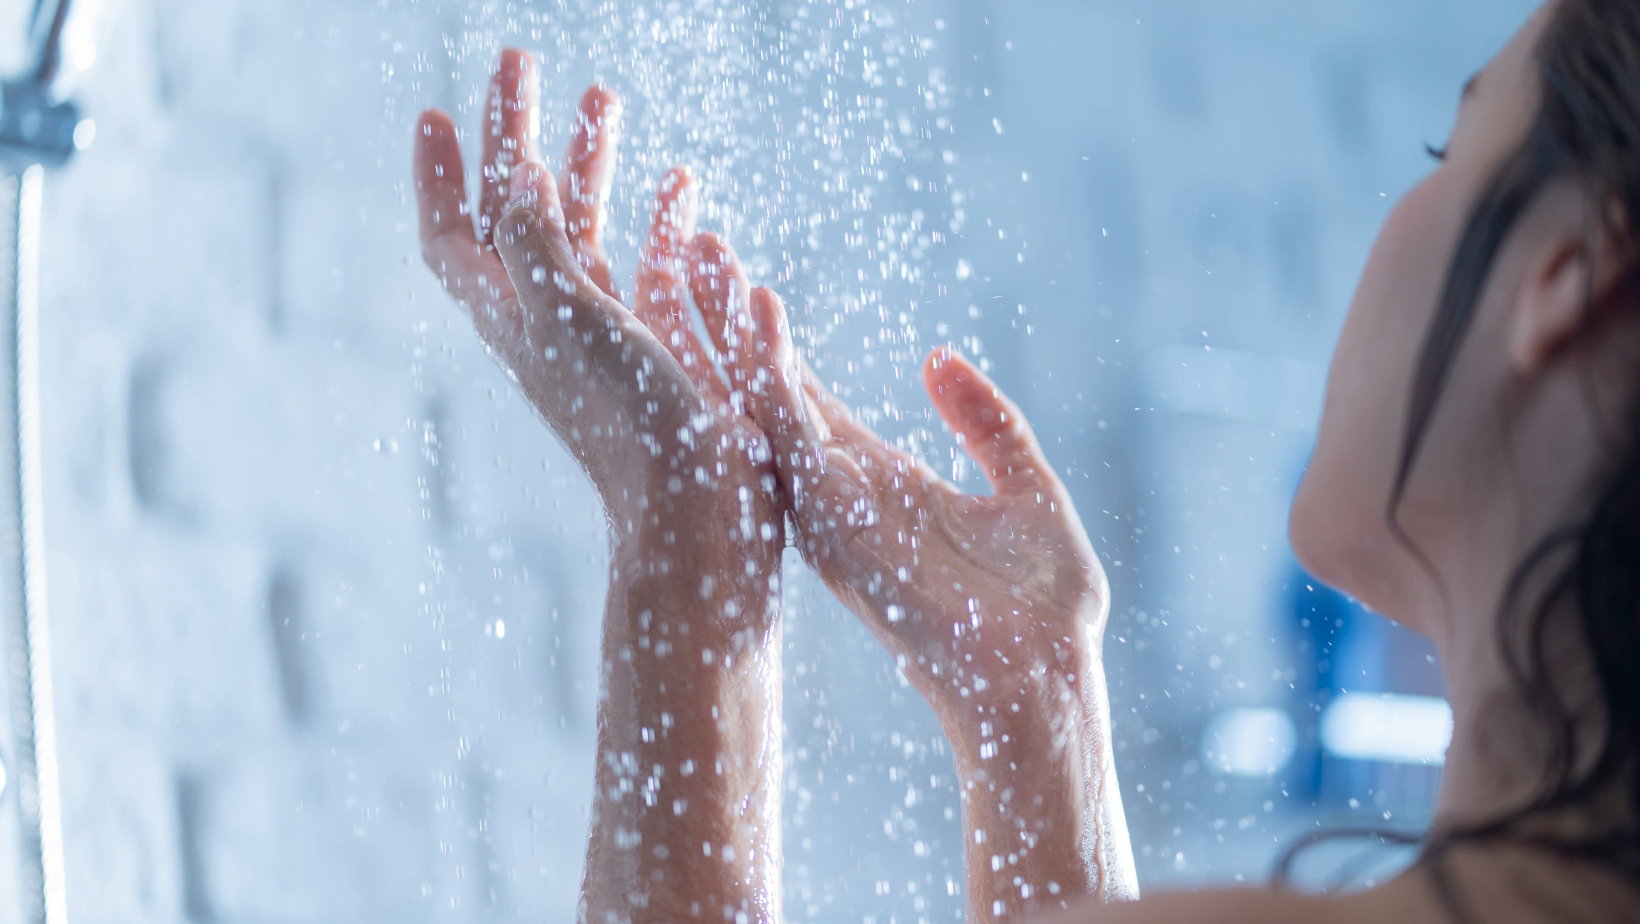 Tome banho de água doce após o banho de mar para manter a pele saudável.